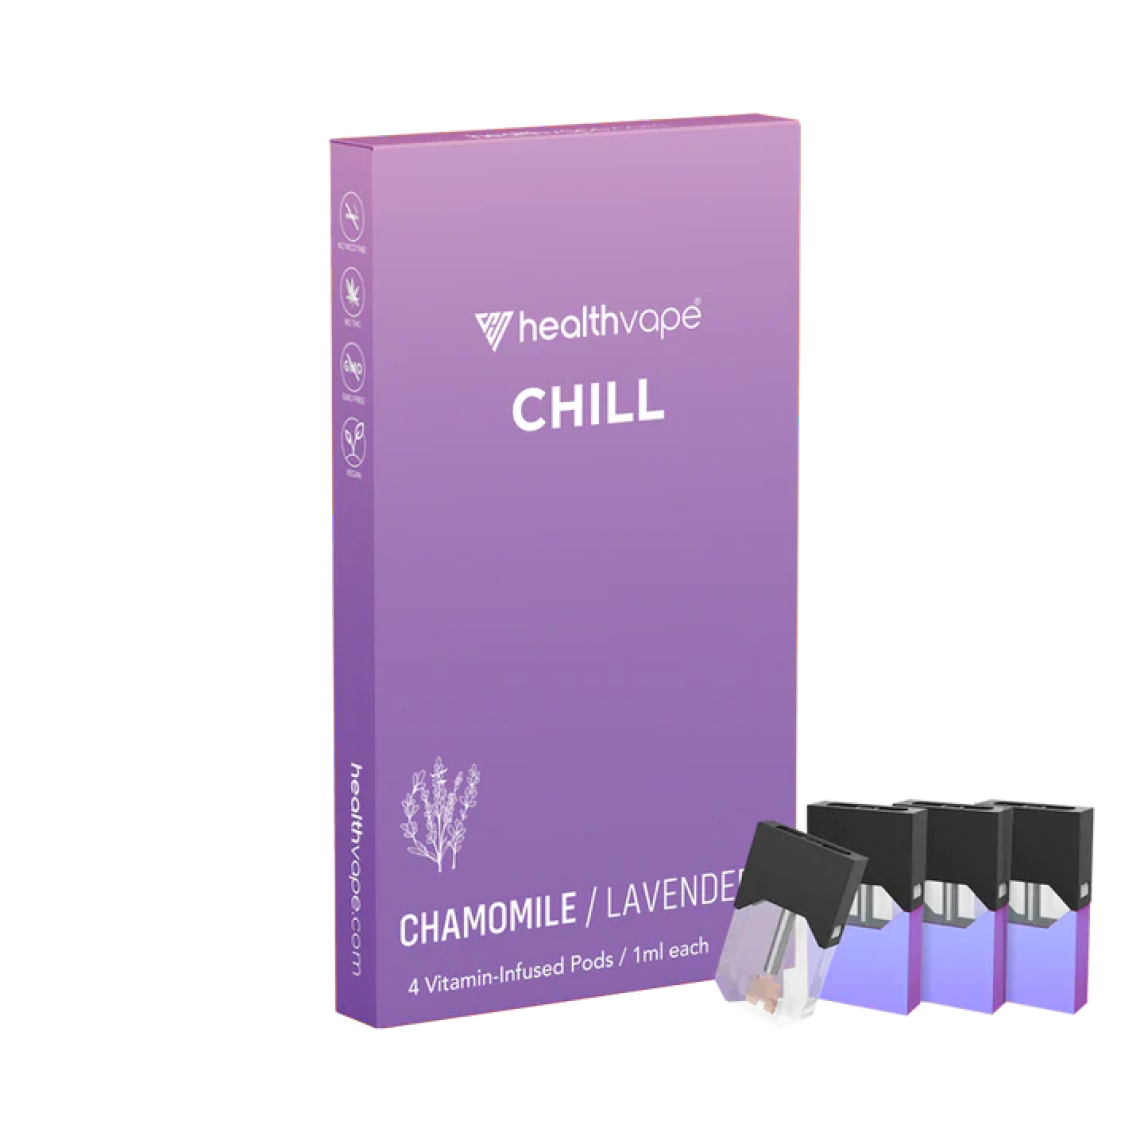 CHILL - Chamomile / Lavender Pods